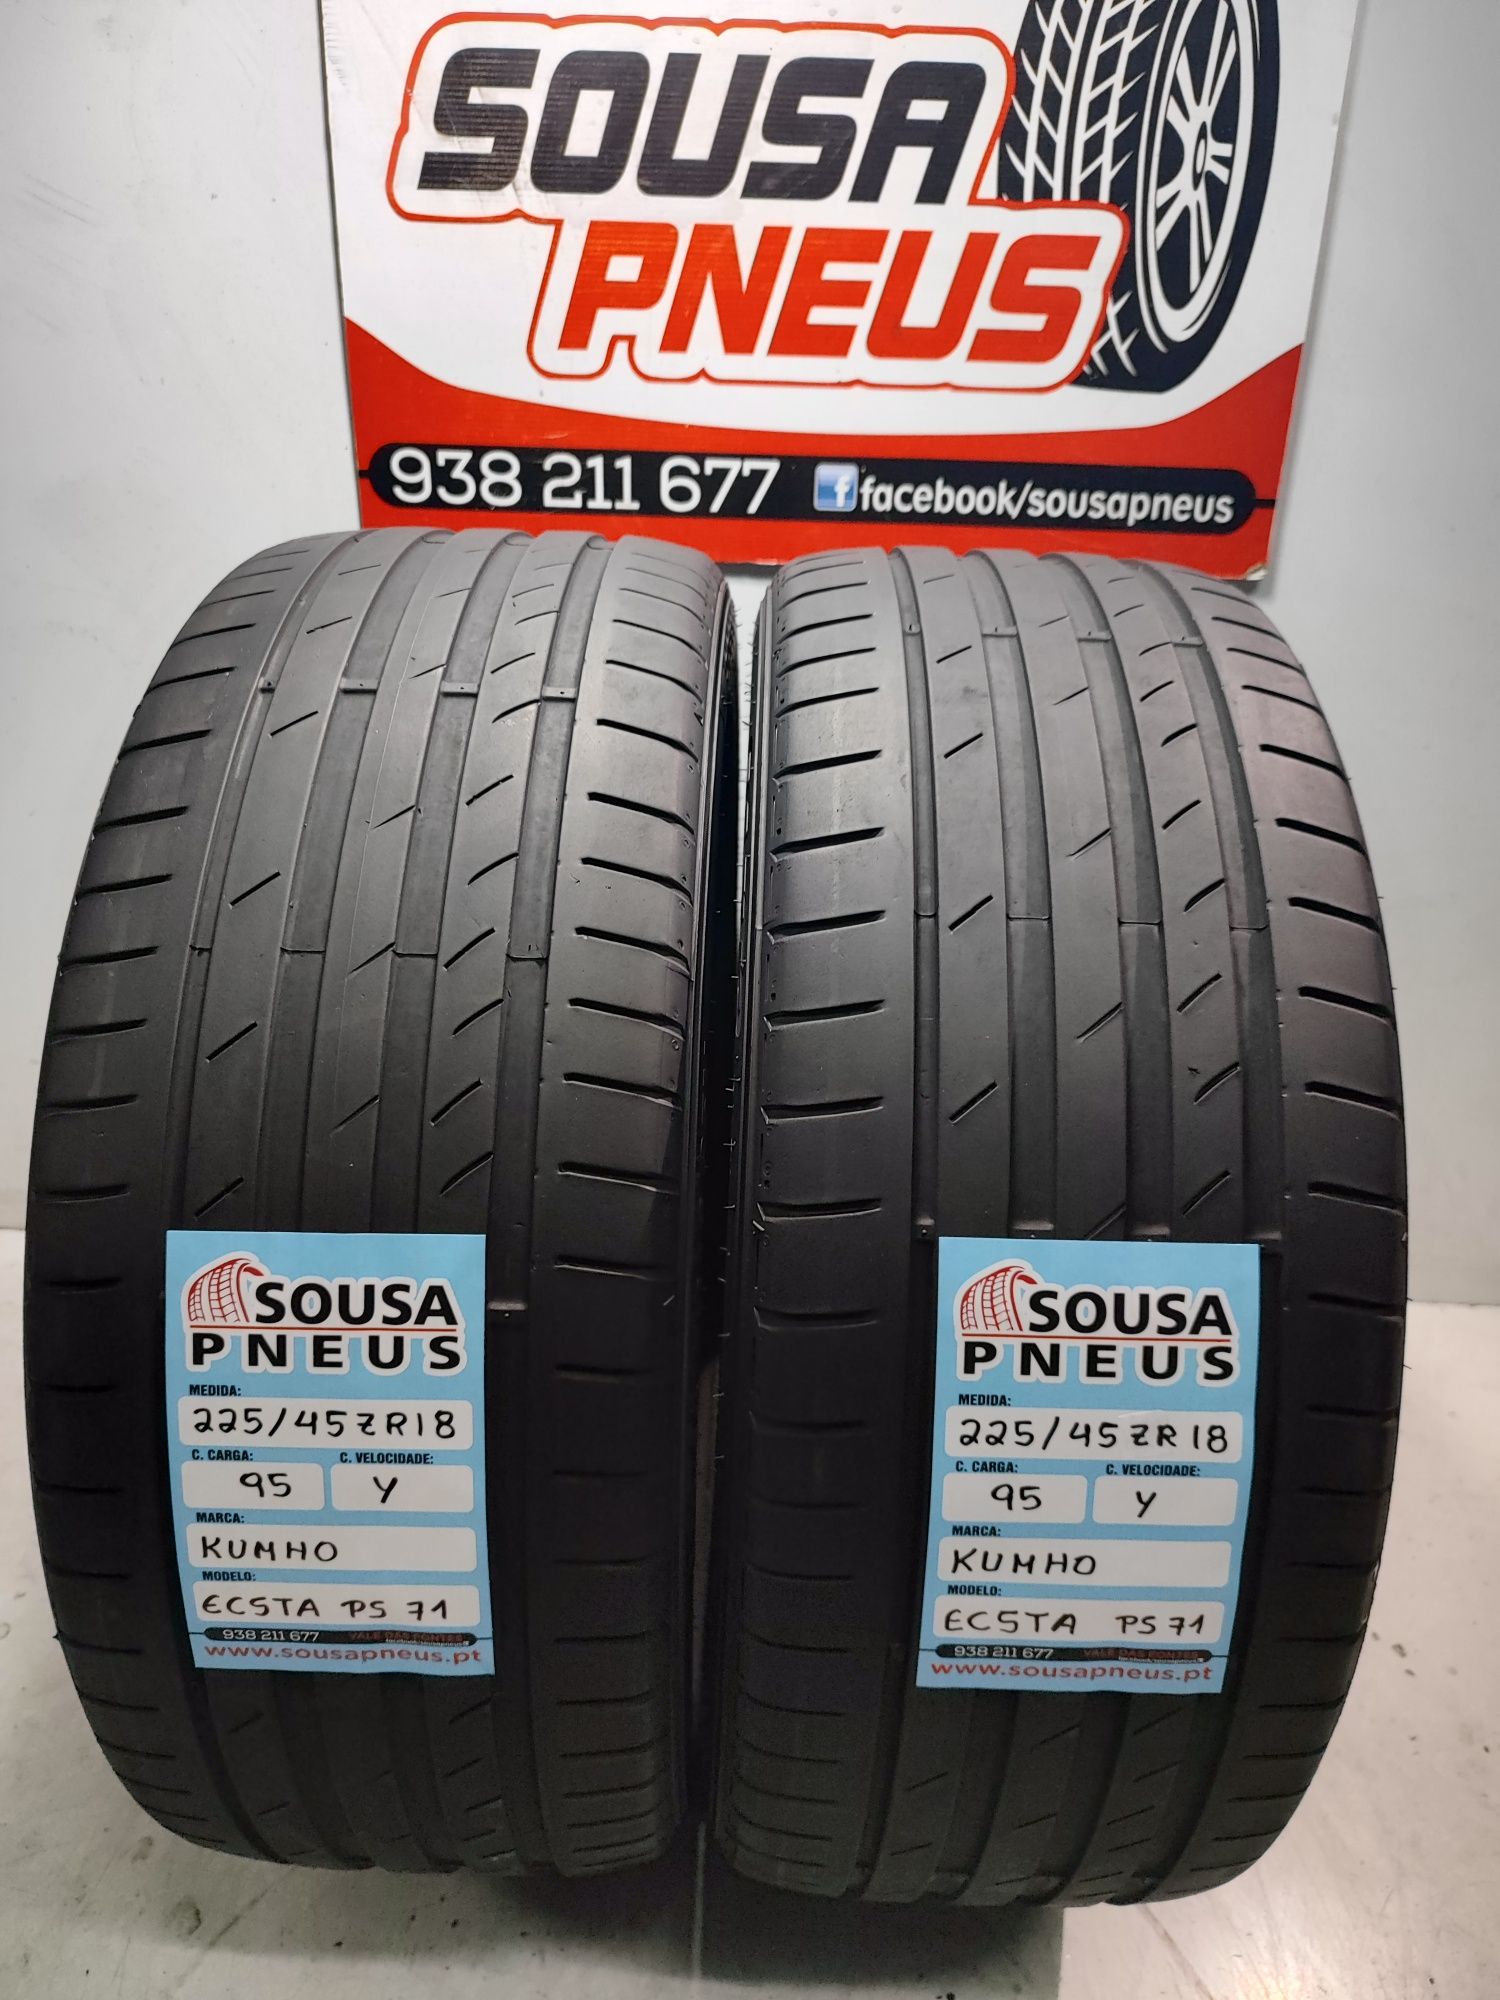 2 pneus semi novos kumho 225/45R18 95Y Oferta dos Portes